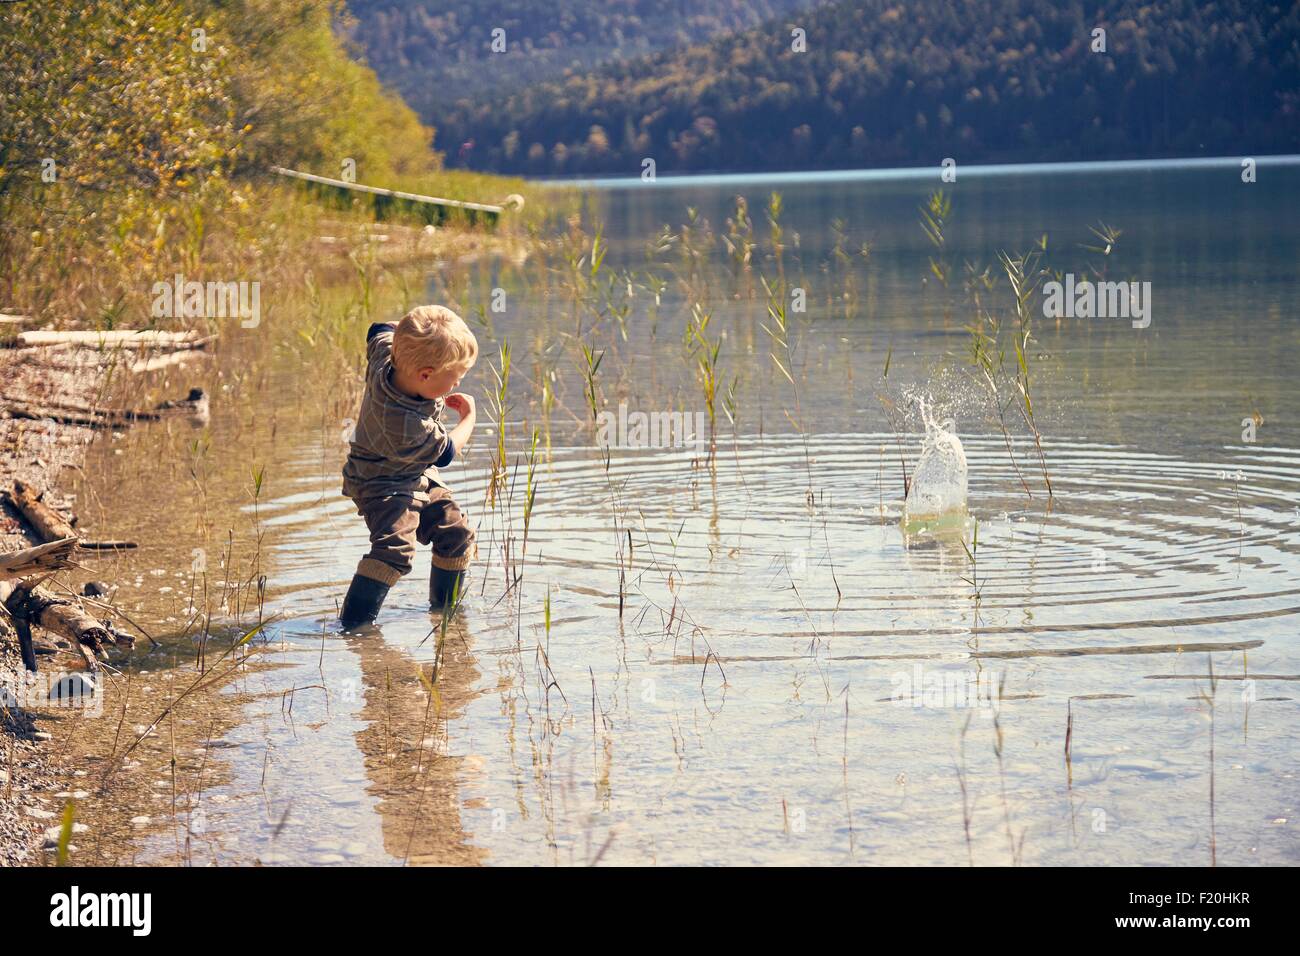 Boy skimming stones in lake, Kochel, Bavaria, Germany Stock Photo